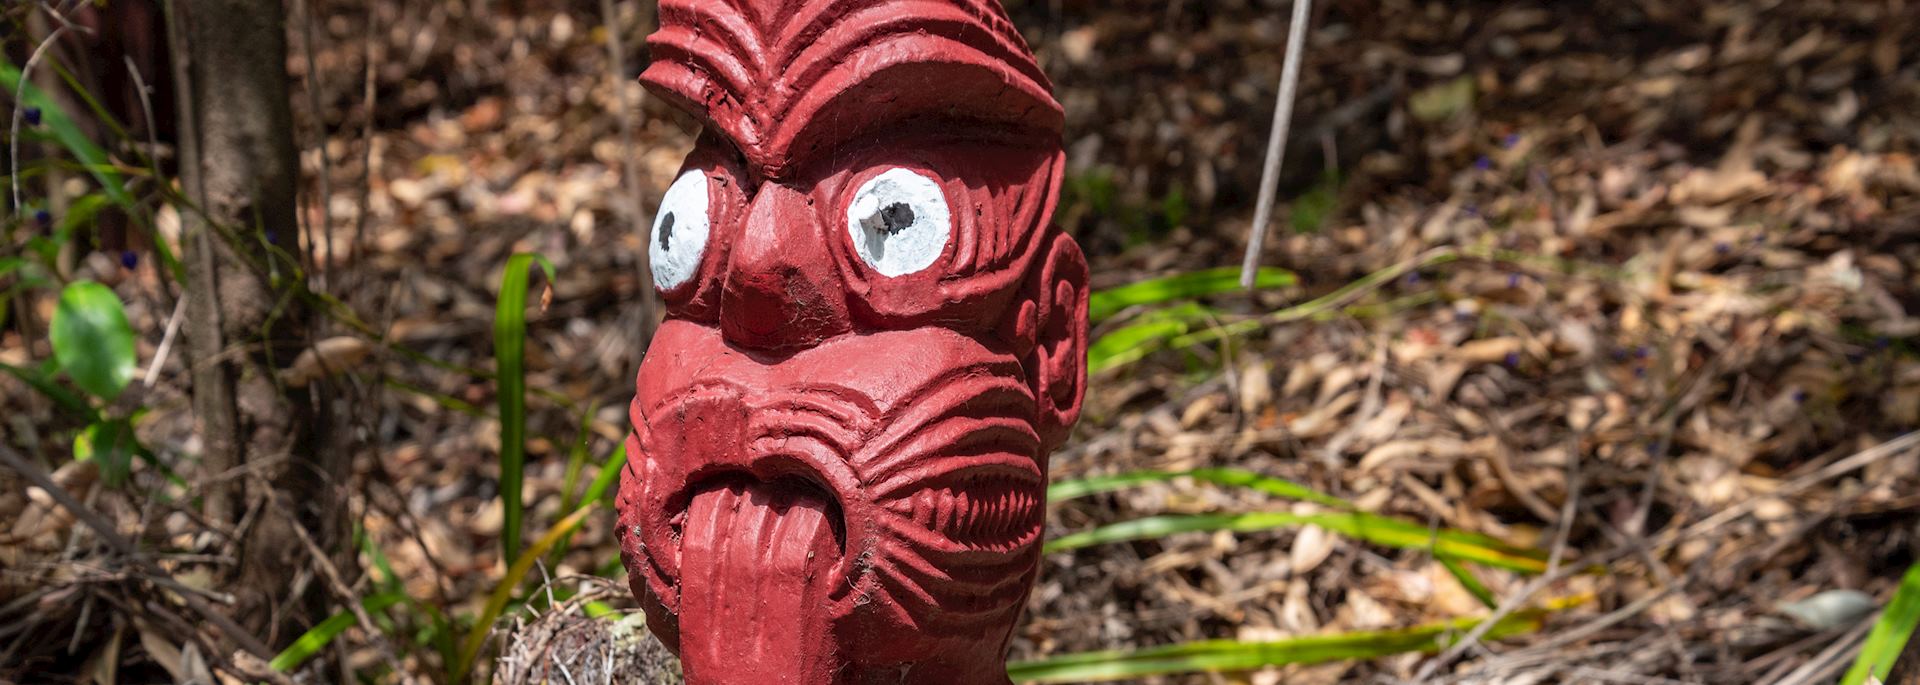 Māori carving, Rotorua